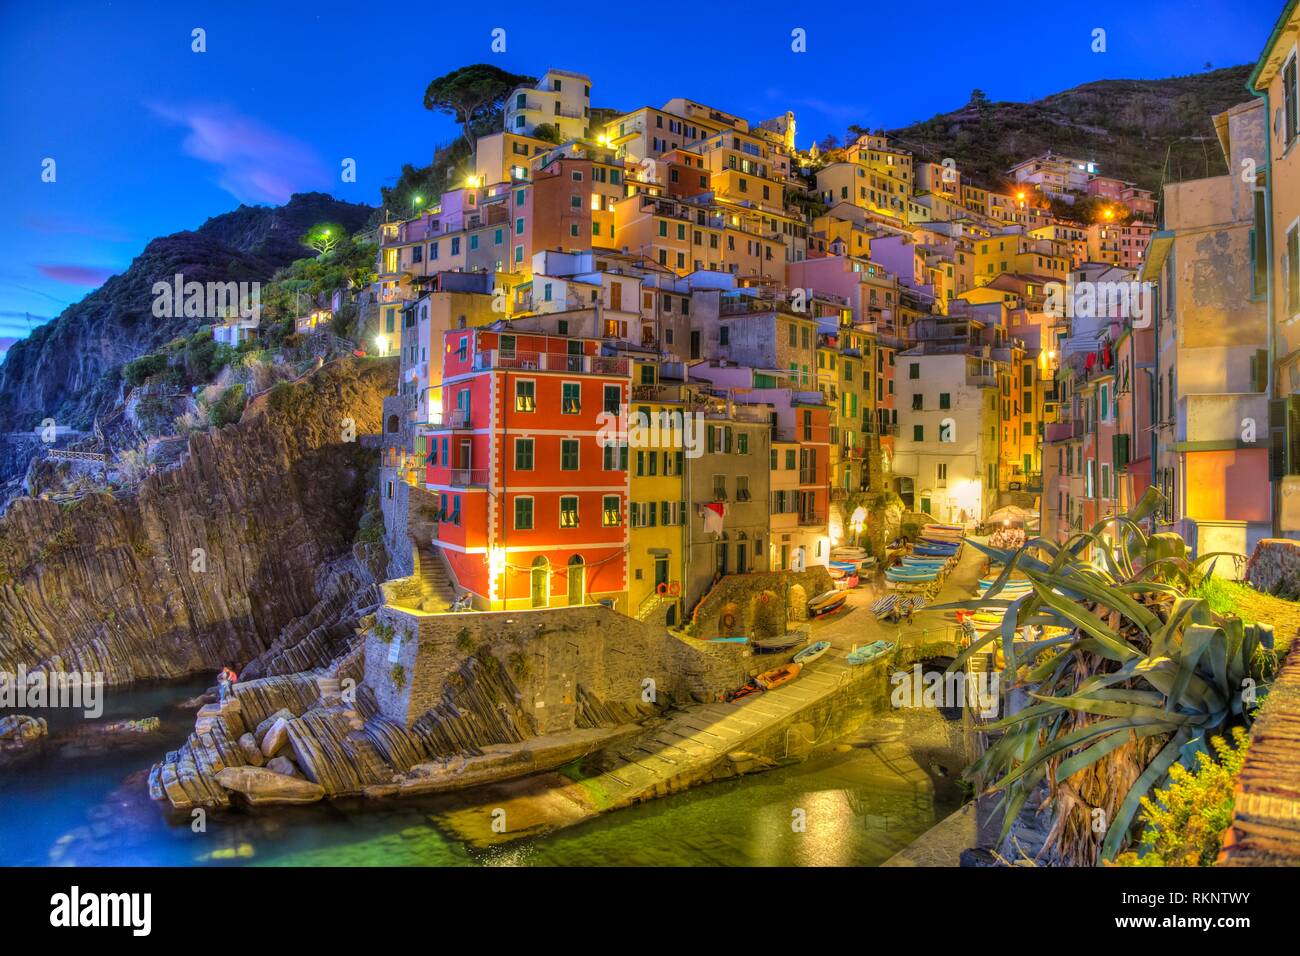 El Pueblo Acantilado de Riomaggiore iluminado al anochecer, en Cinque Terre, Italia, Europa. Foto de stock